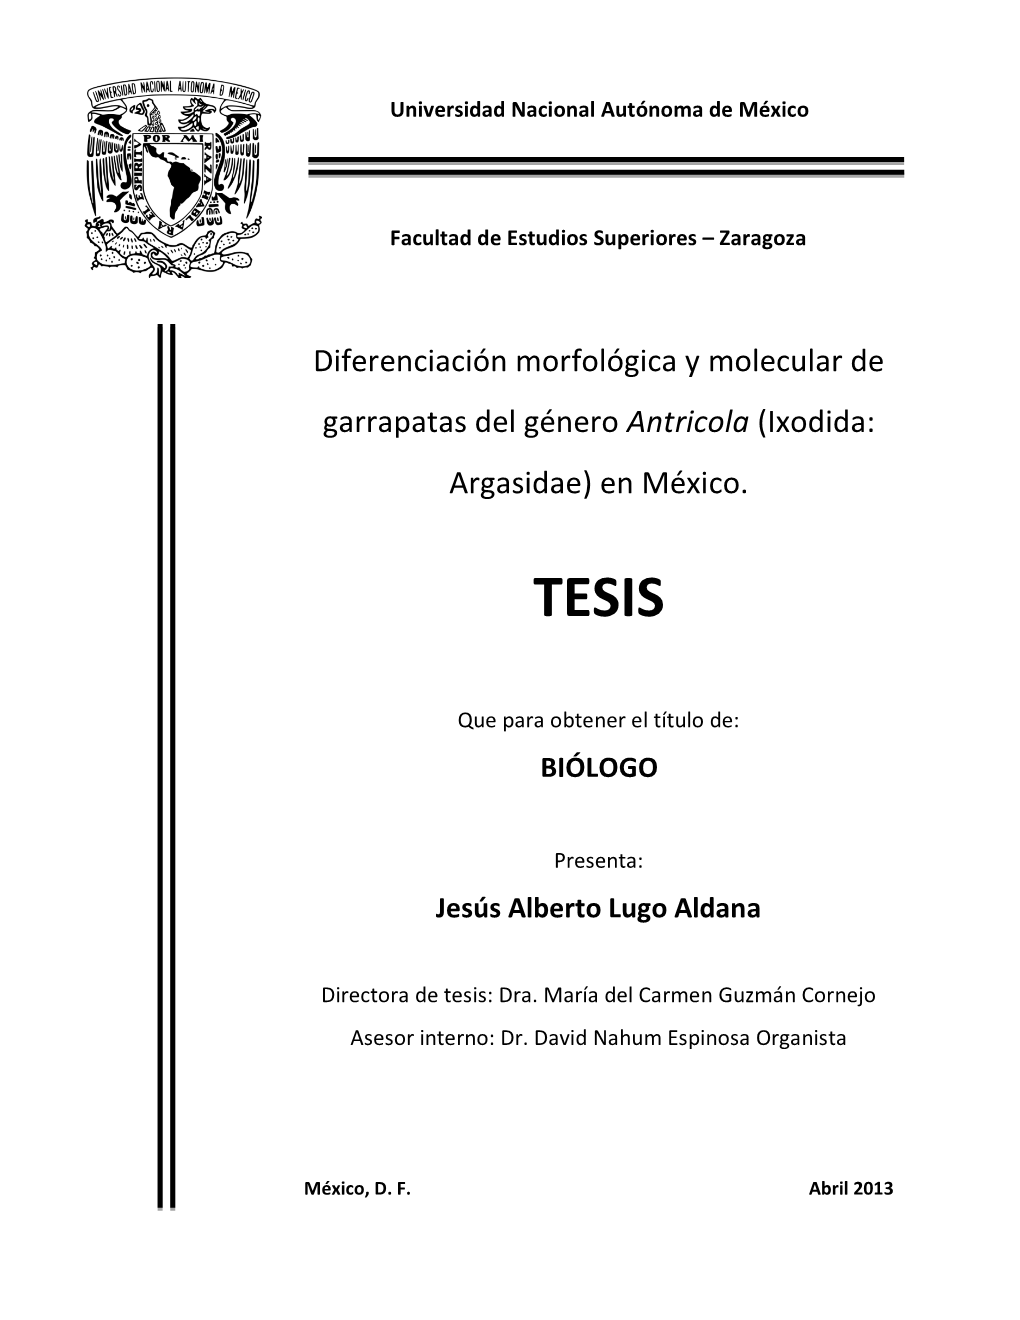 Diferenciación Morfológica Molecular Garrapatas Género Antricola México